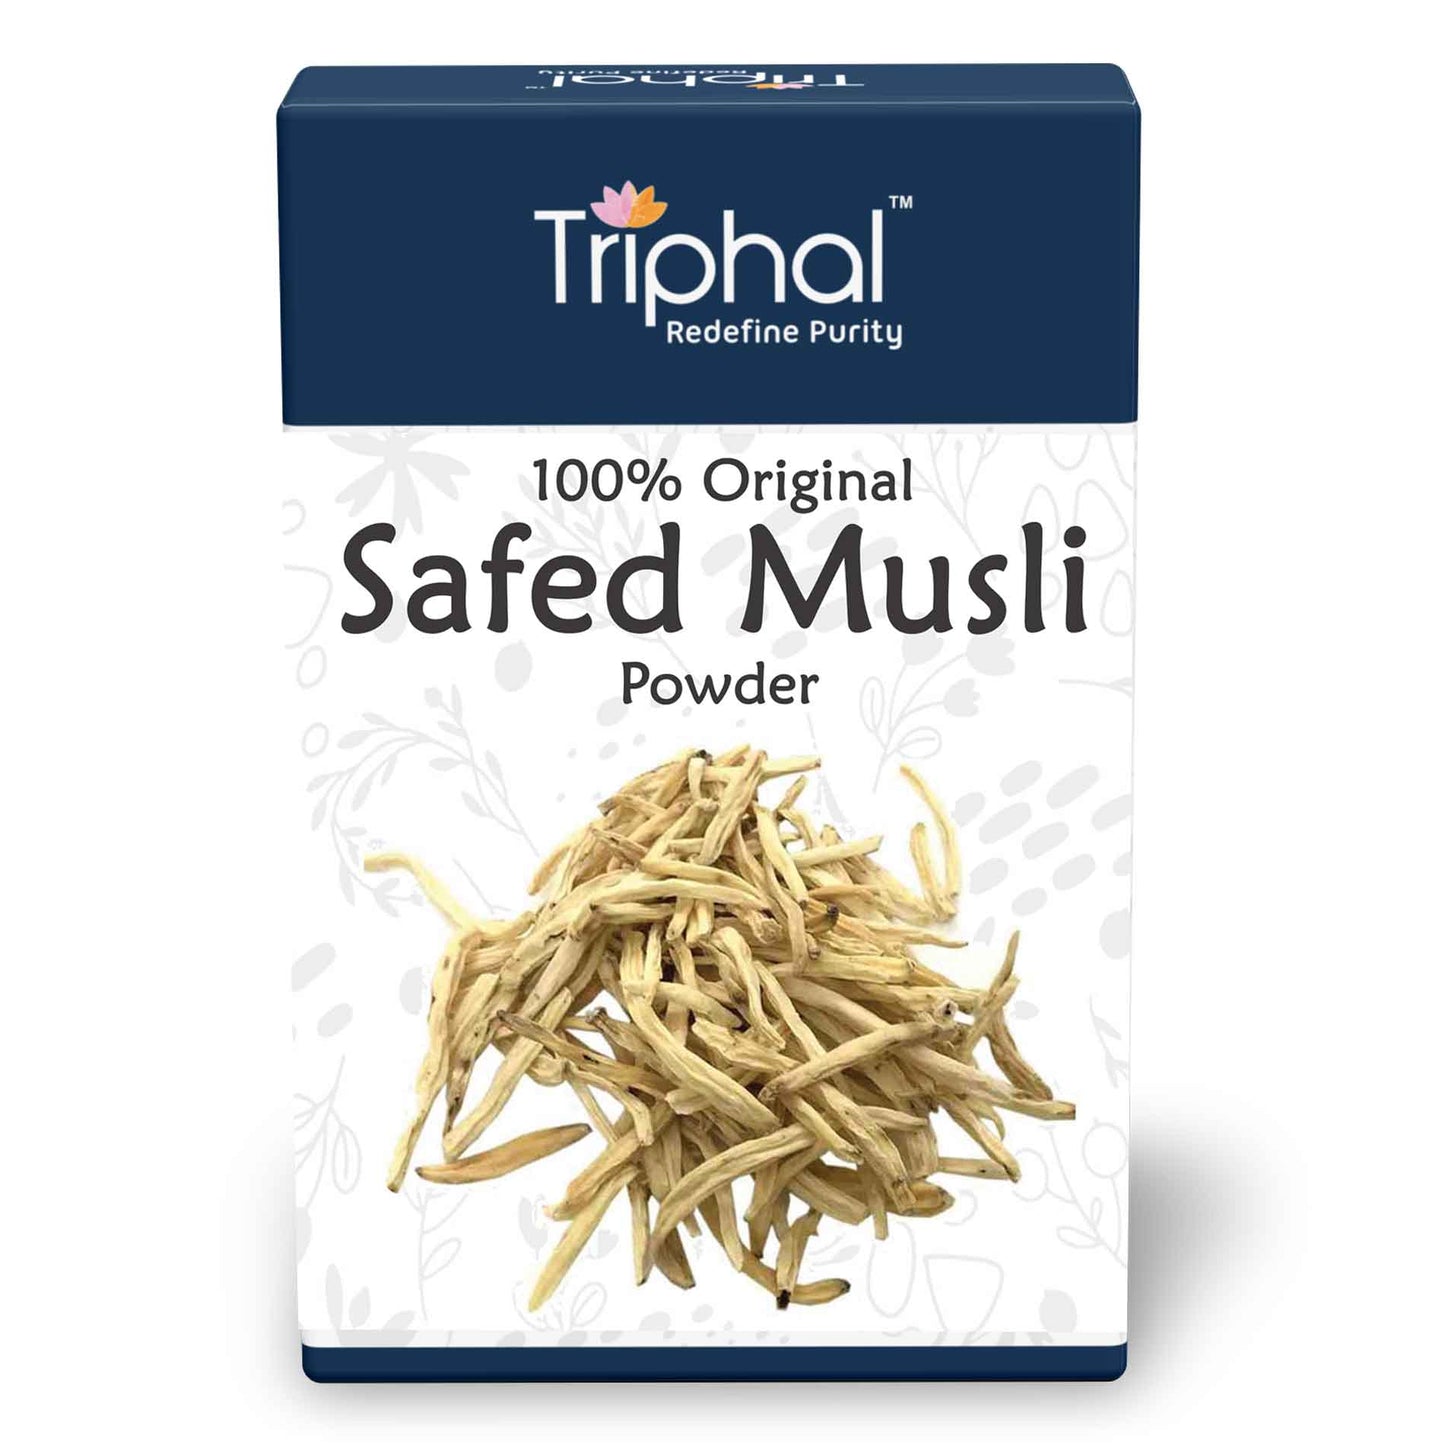 Pure and Original Safed Musli Powder or SHwet Moosli CHurna - No Added Color, No Added Flavor, No Added Preservatives.